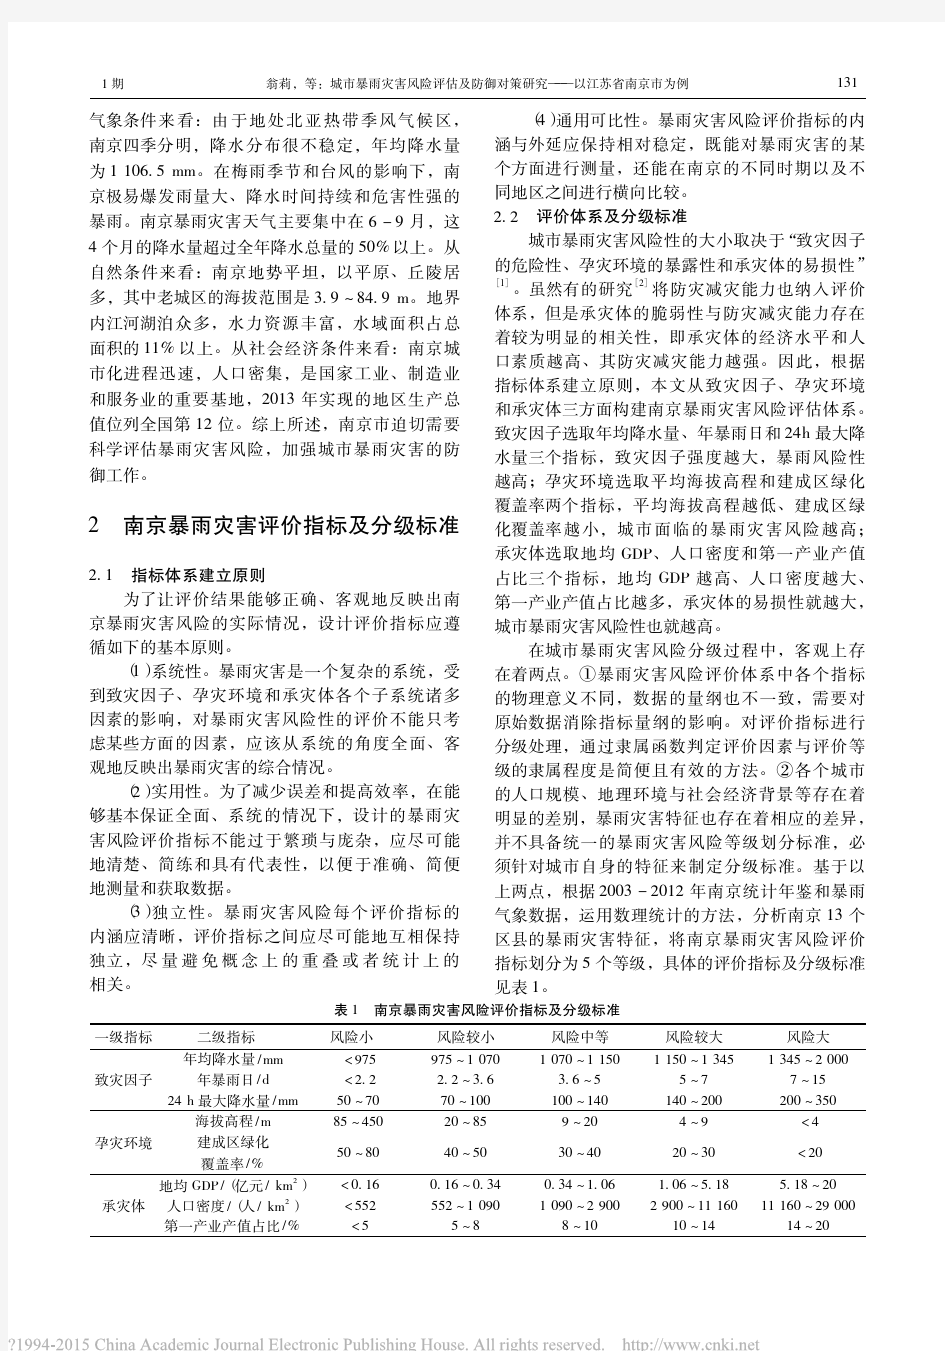 城市暴雨灾害风险评估及防御对策研究_以江苏省南京市为例_翁莉